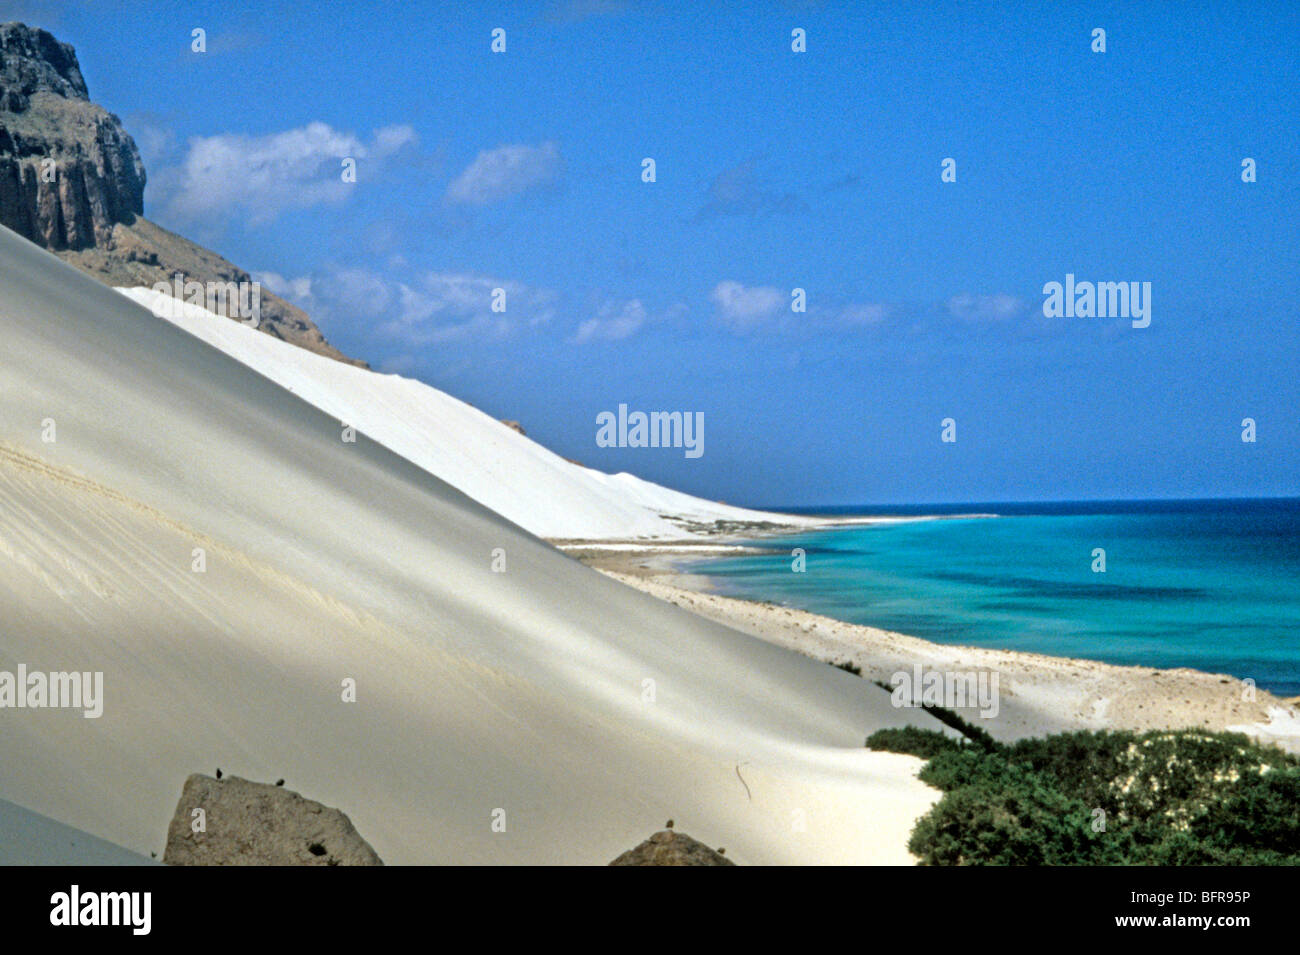 El paisaje costero con dunas de arena blanca en la isla de Socotra Foto de stock